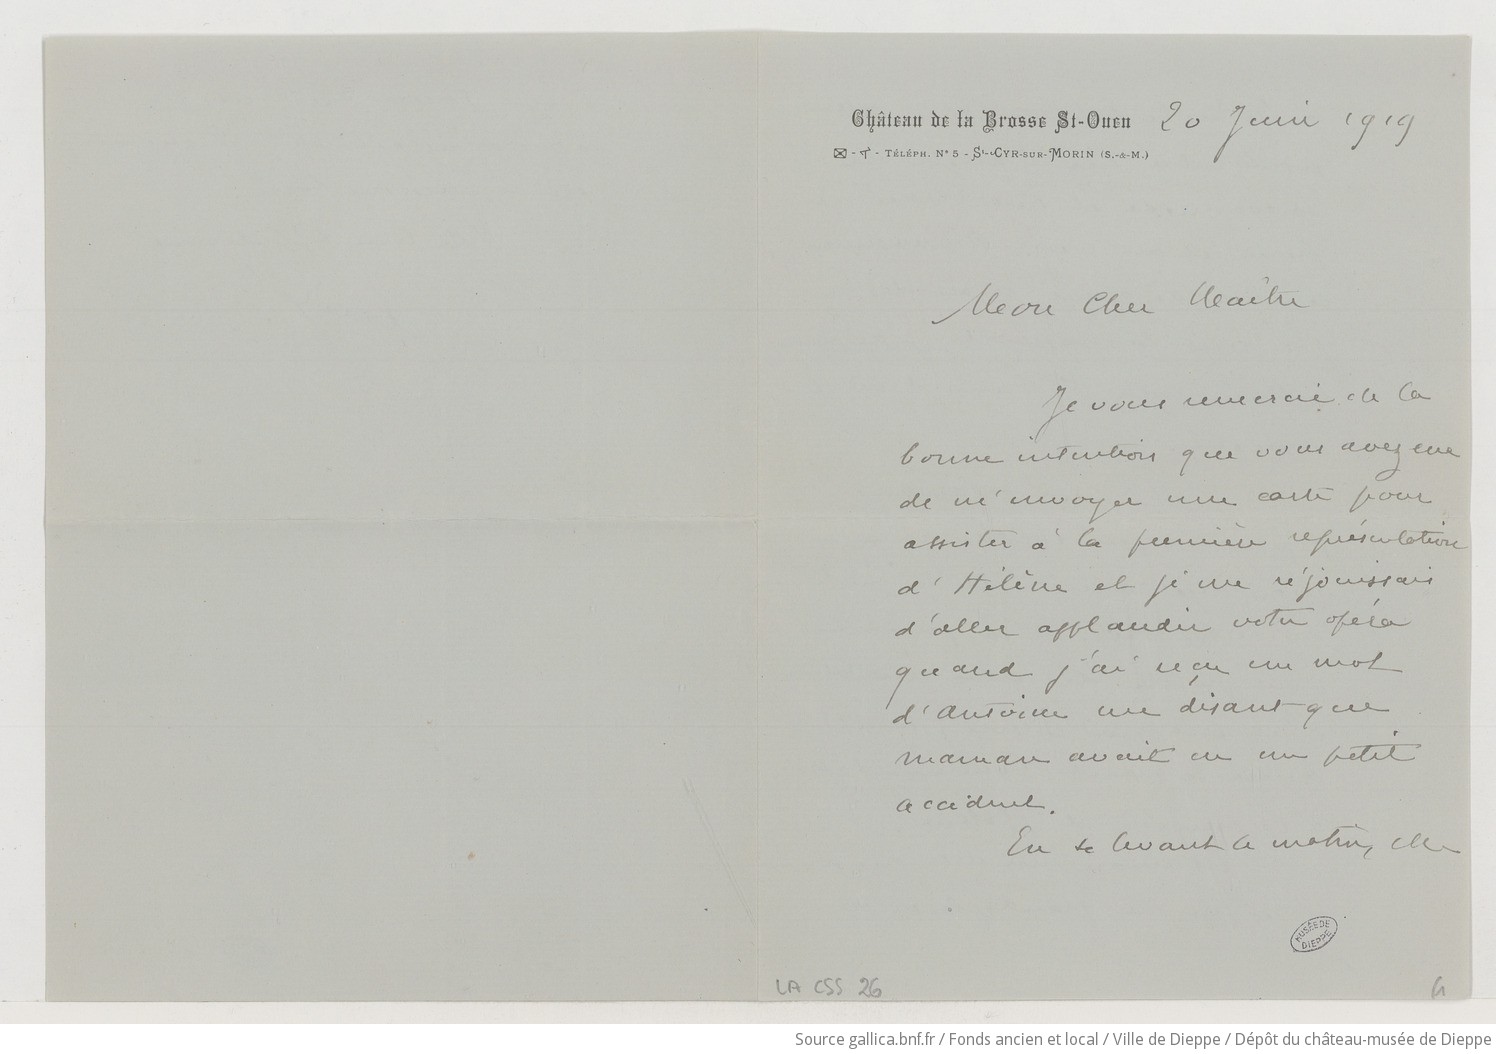 [Lettre d'André Chazal à Camille Saint-Saëns] (manuscrit autographe)